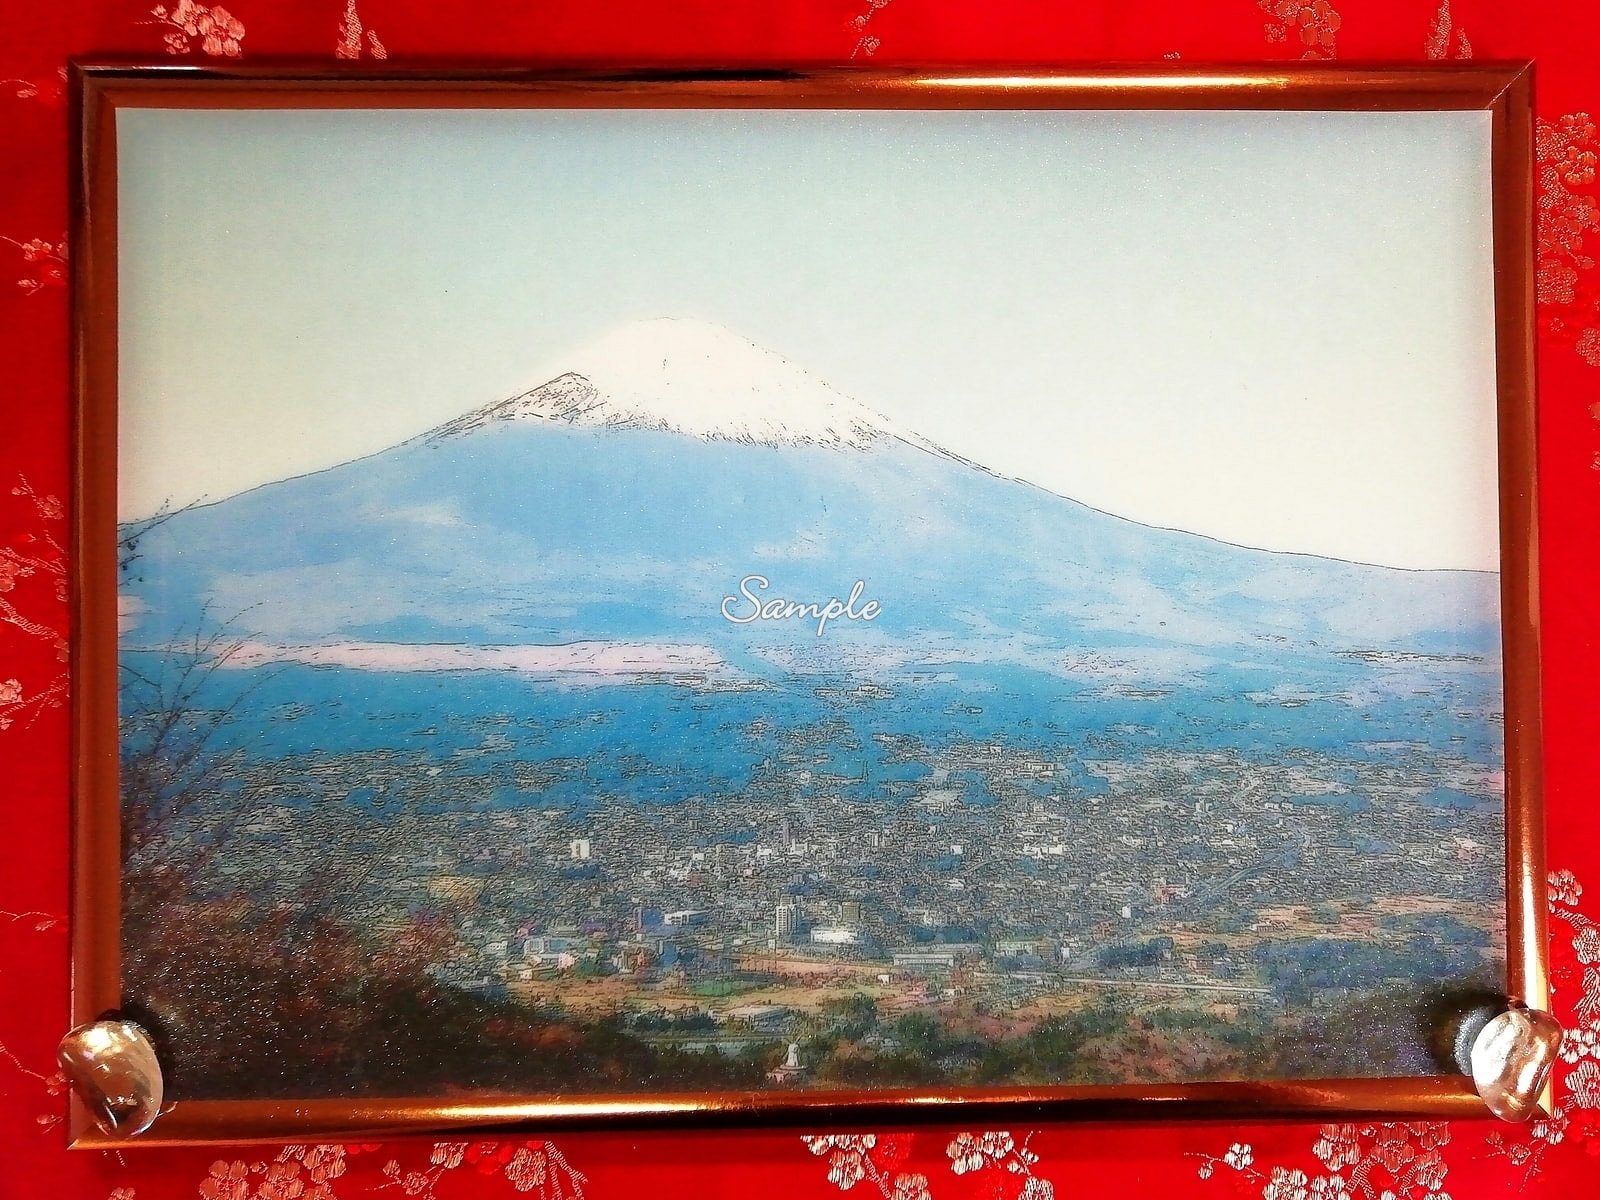 جبل فوجي 2